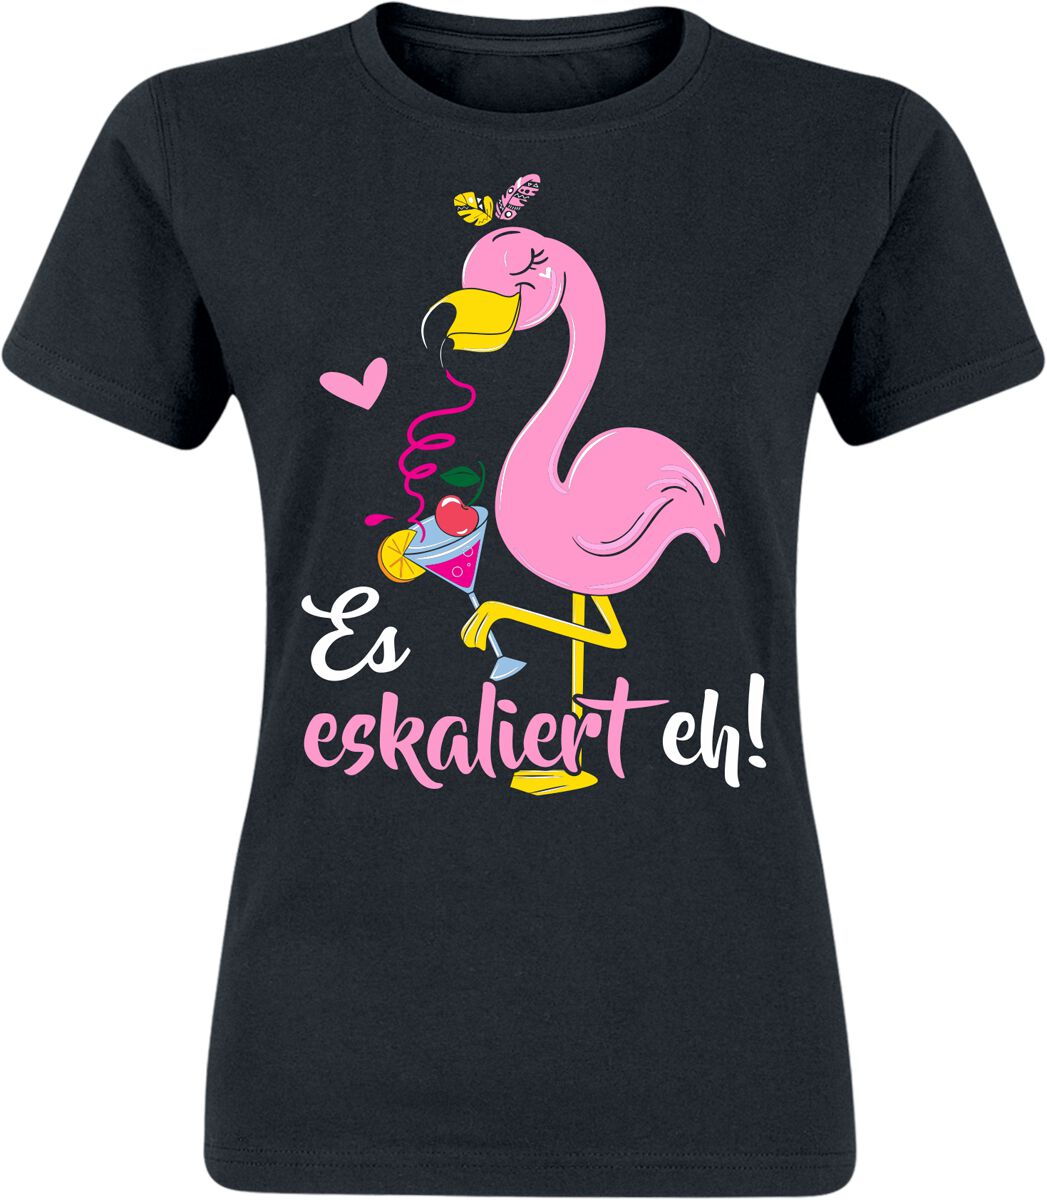 Alkohol & Party T-Shirt - Flamingo - Es eskaliert eh! - S bis XXL - für Damen - Größe XXL - schwarz